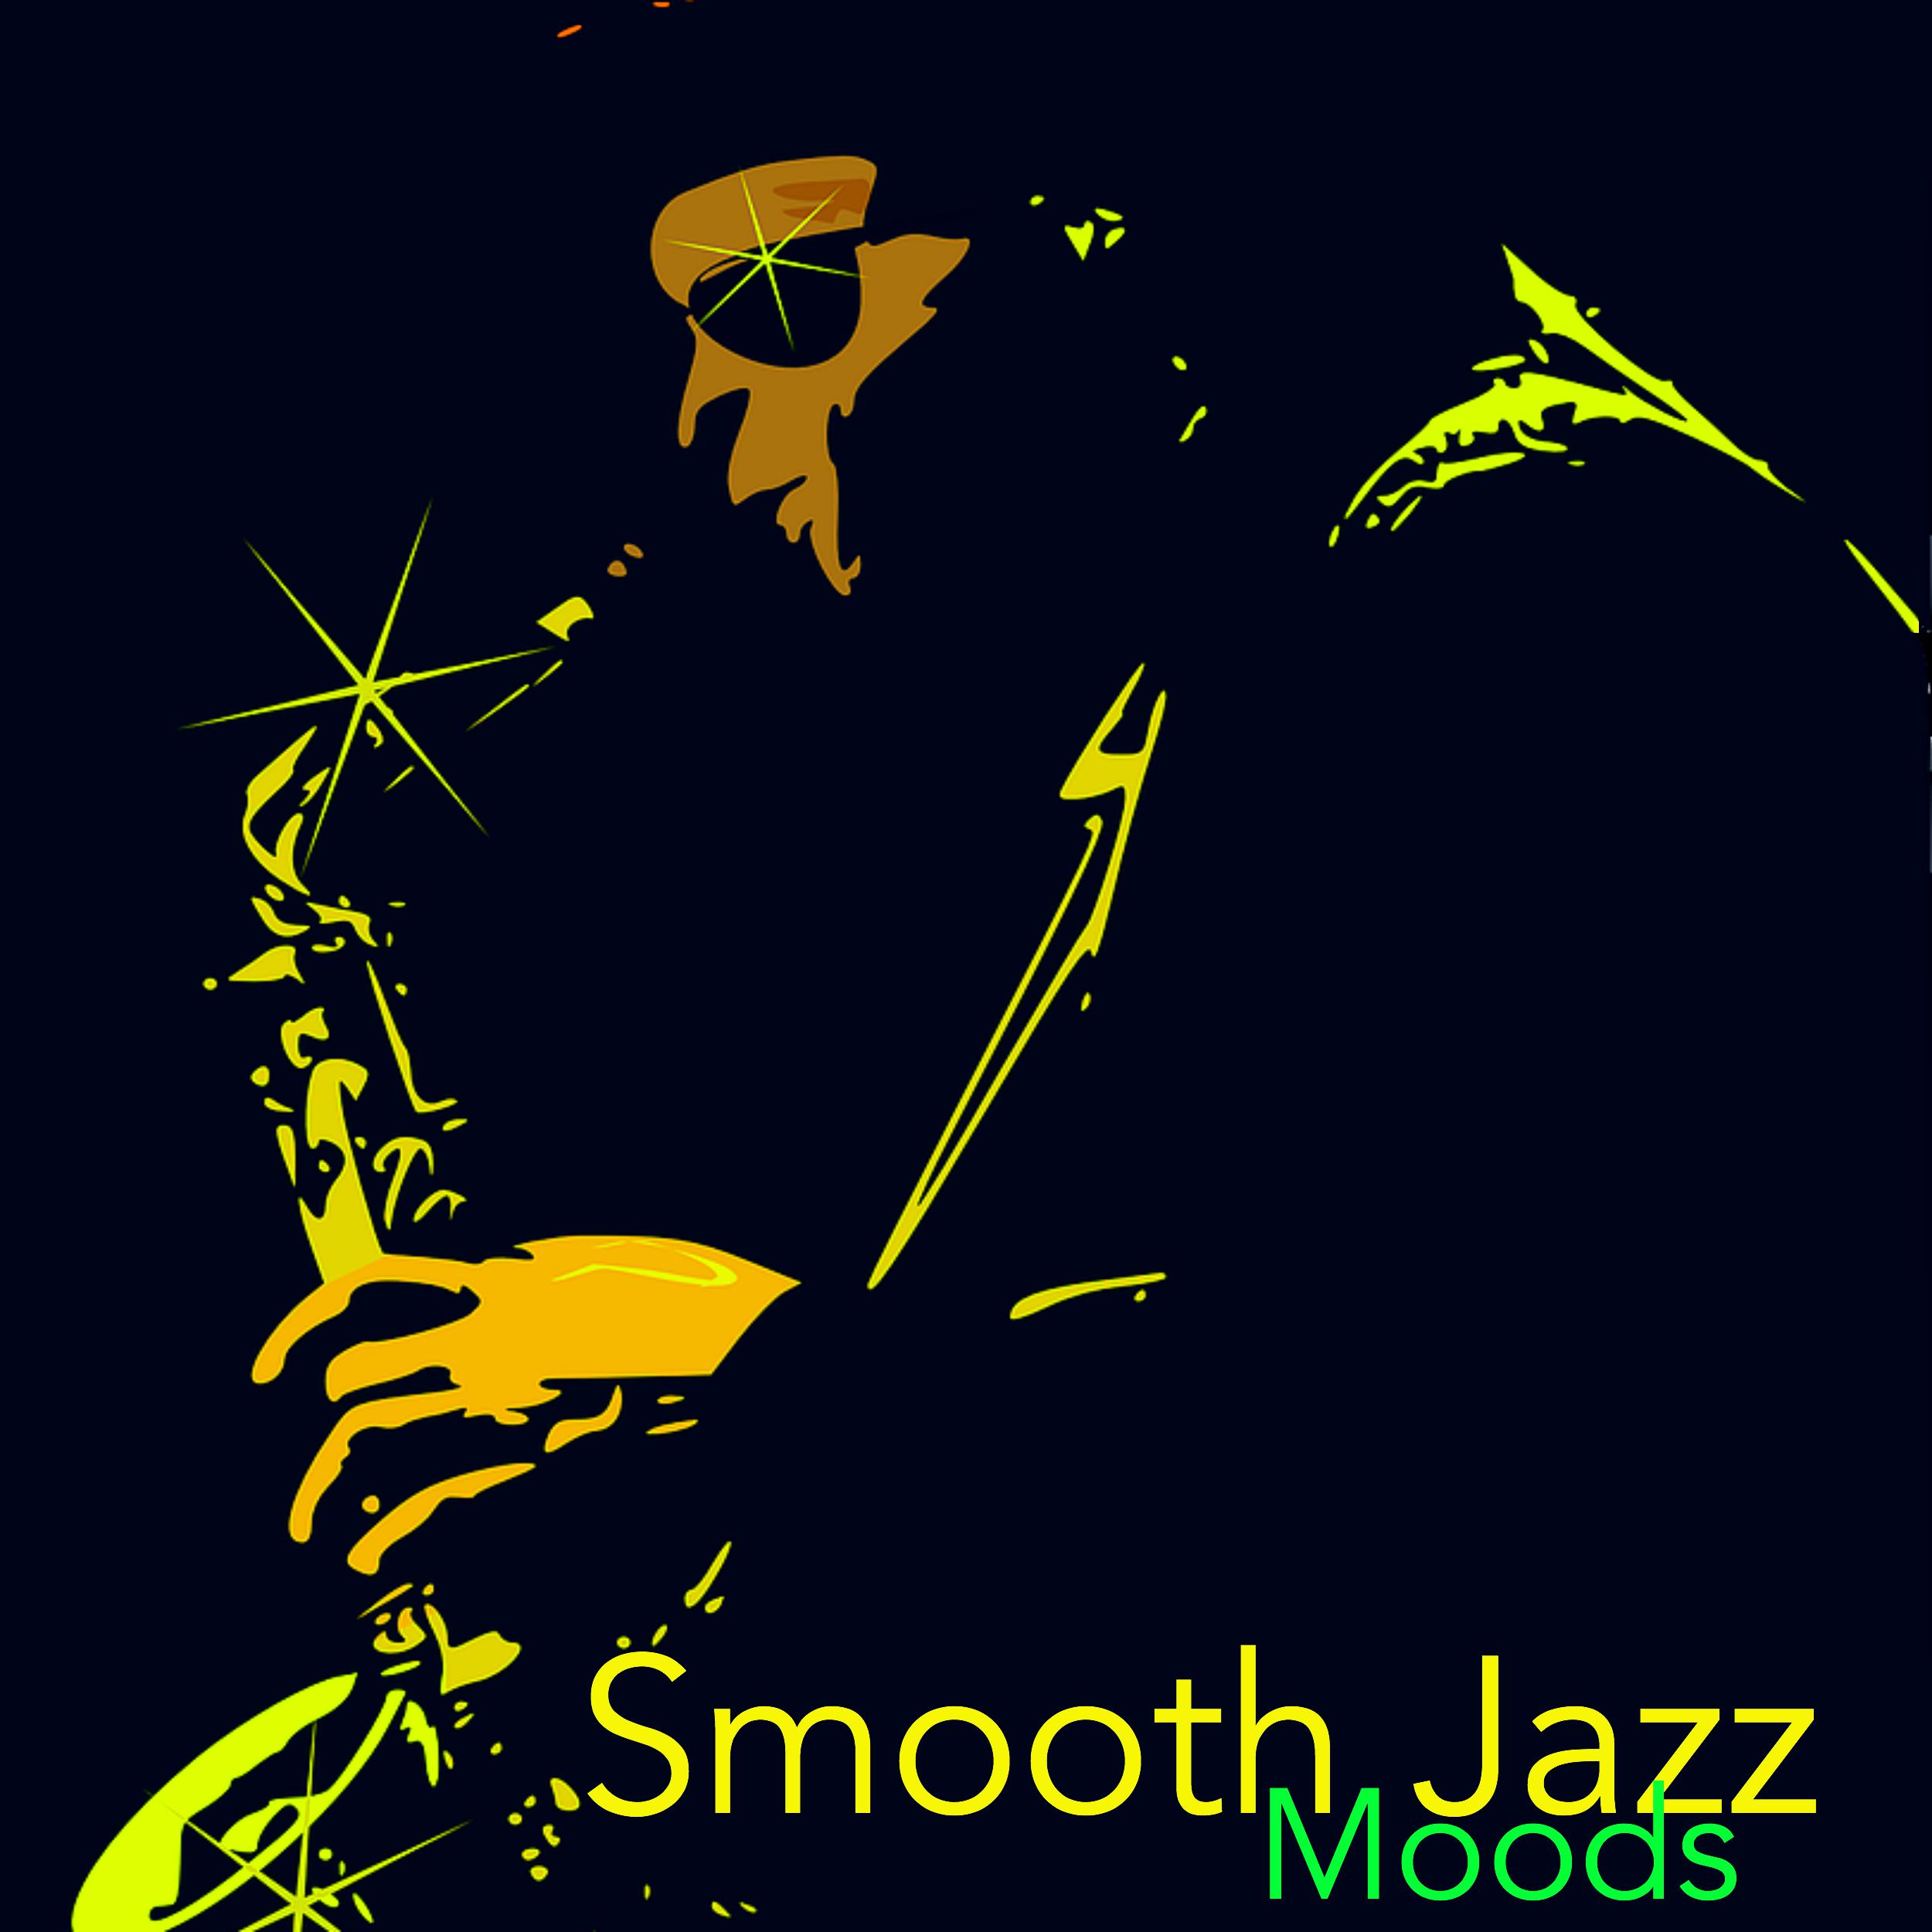 Sax Jazz in Blues